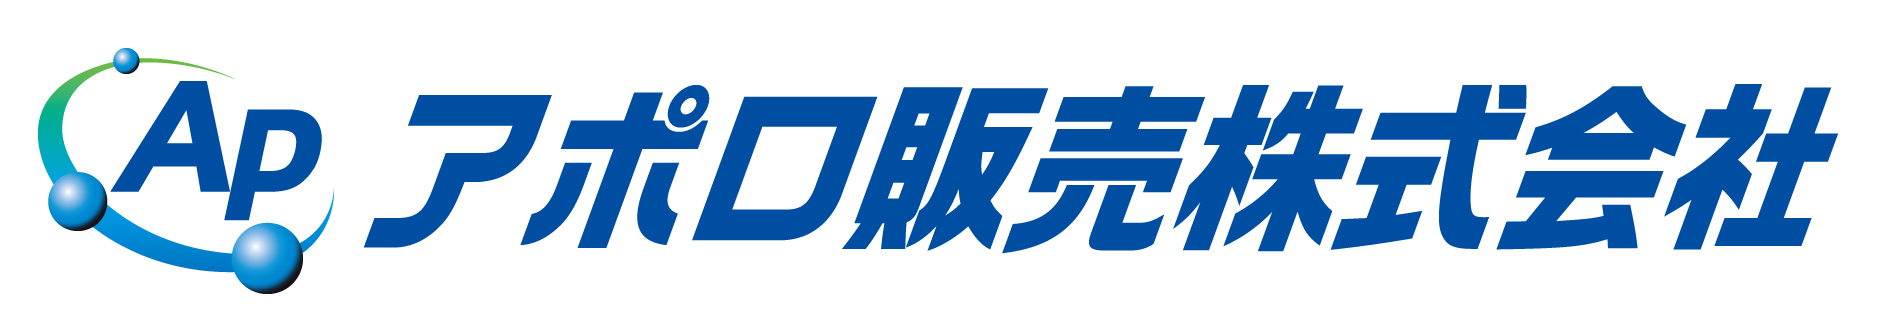 札幌のLPガス（プロパン）会社アポロ販売のロゴ